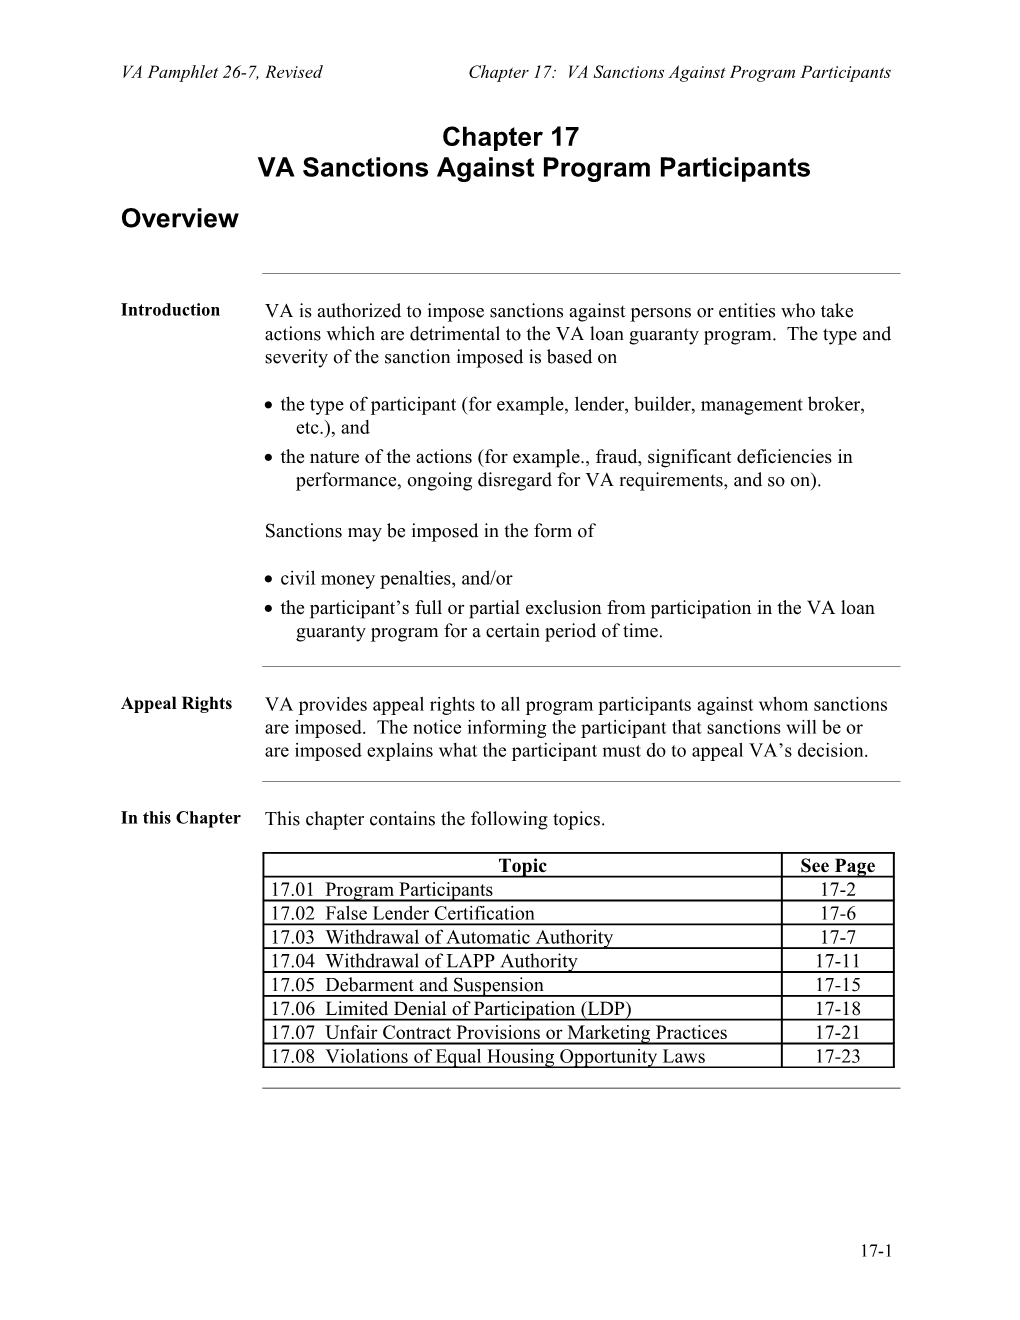 Chapter 17 VA Sanctions Against Program Participants